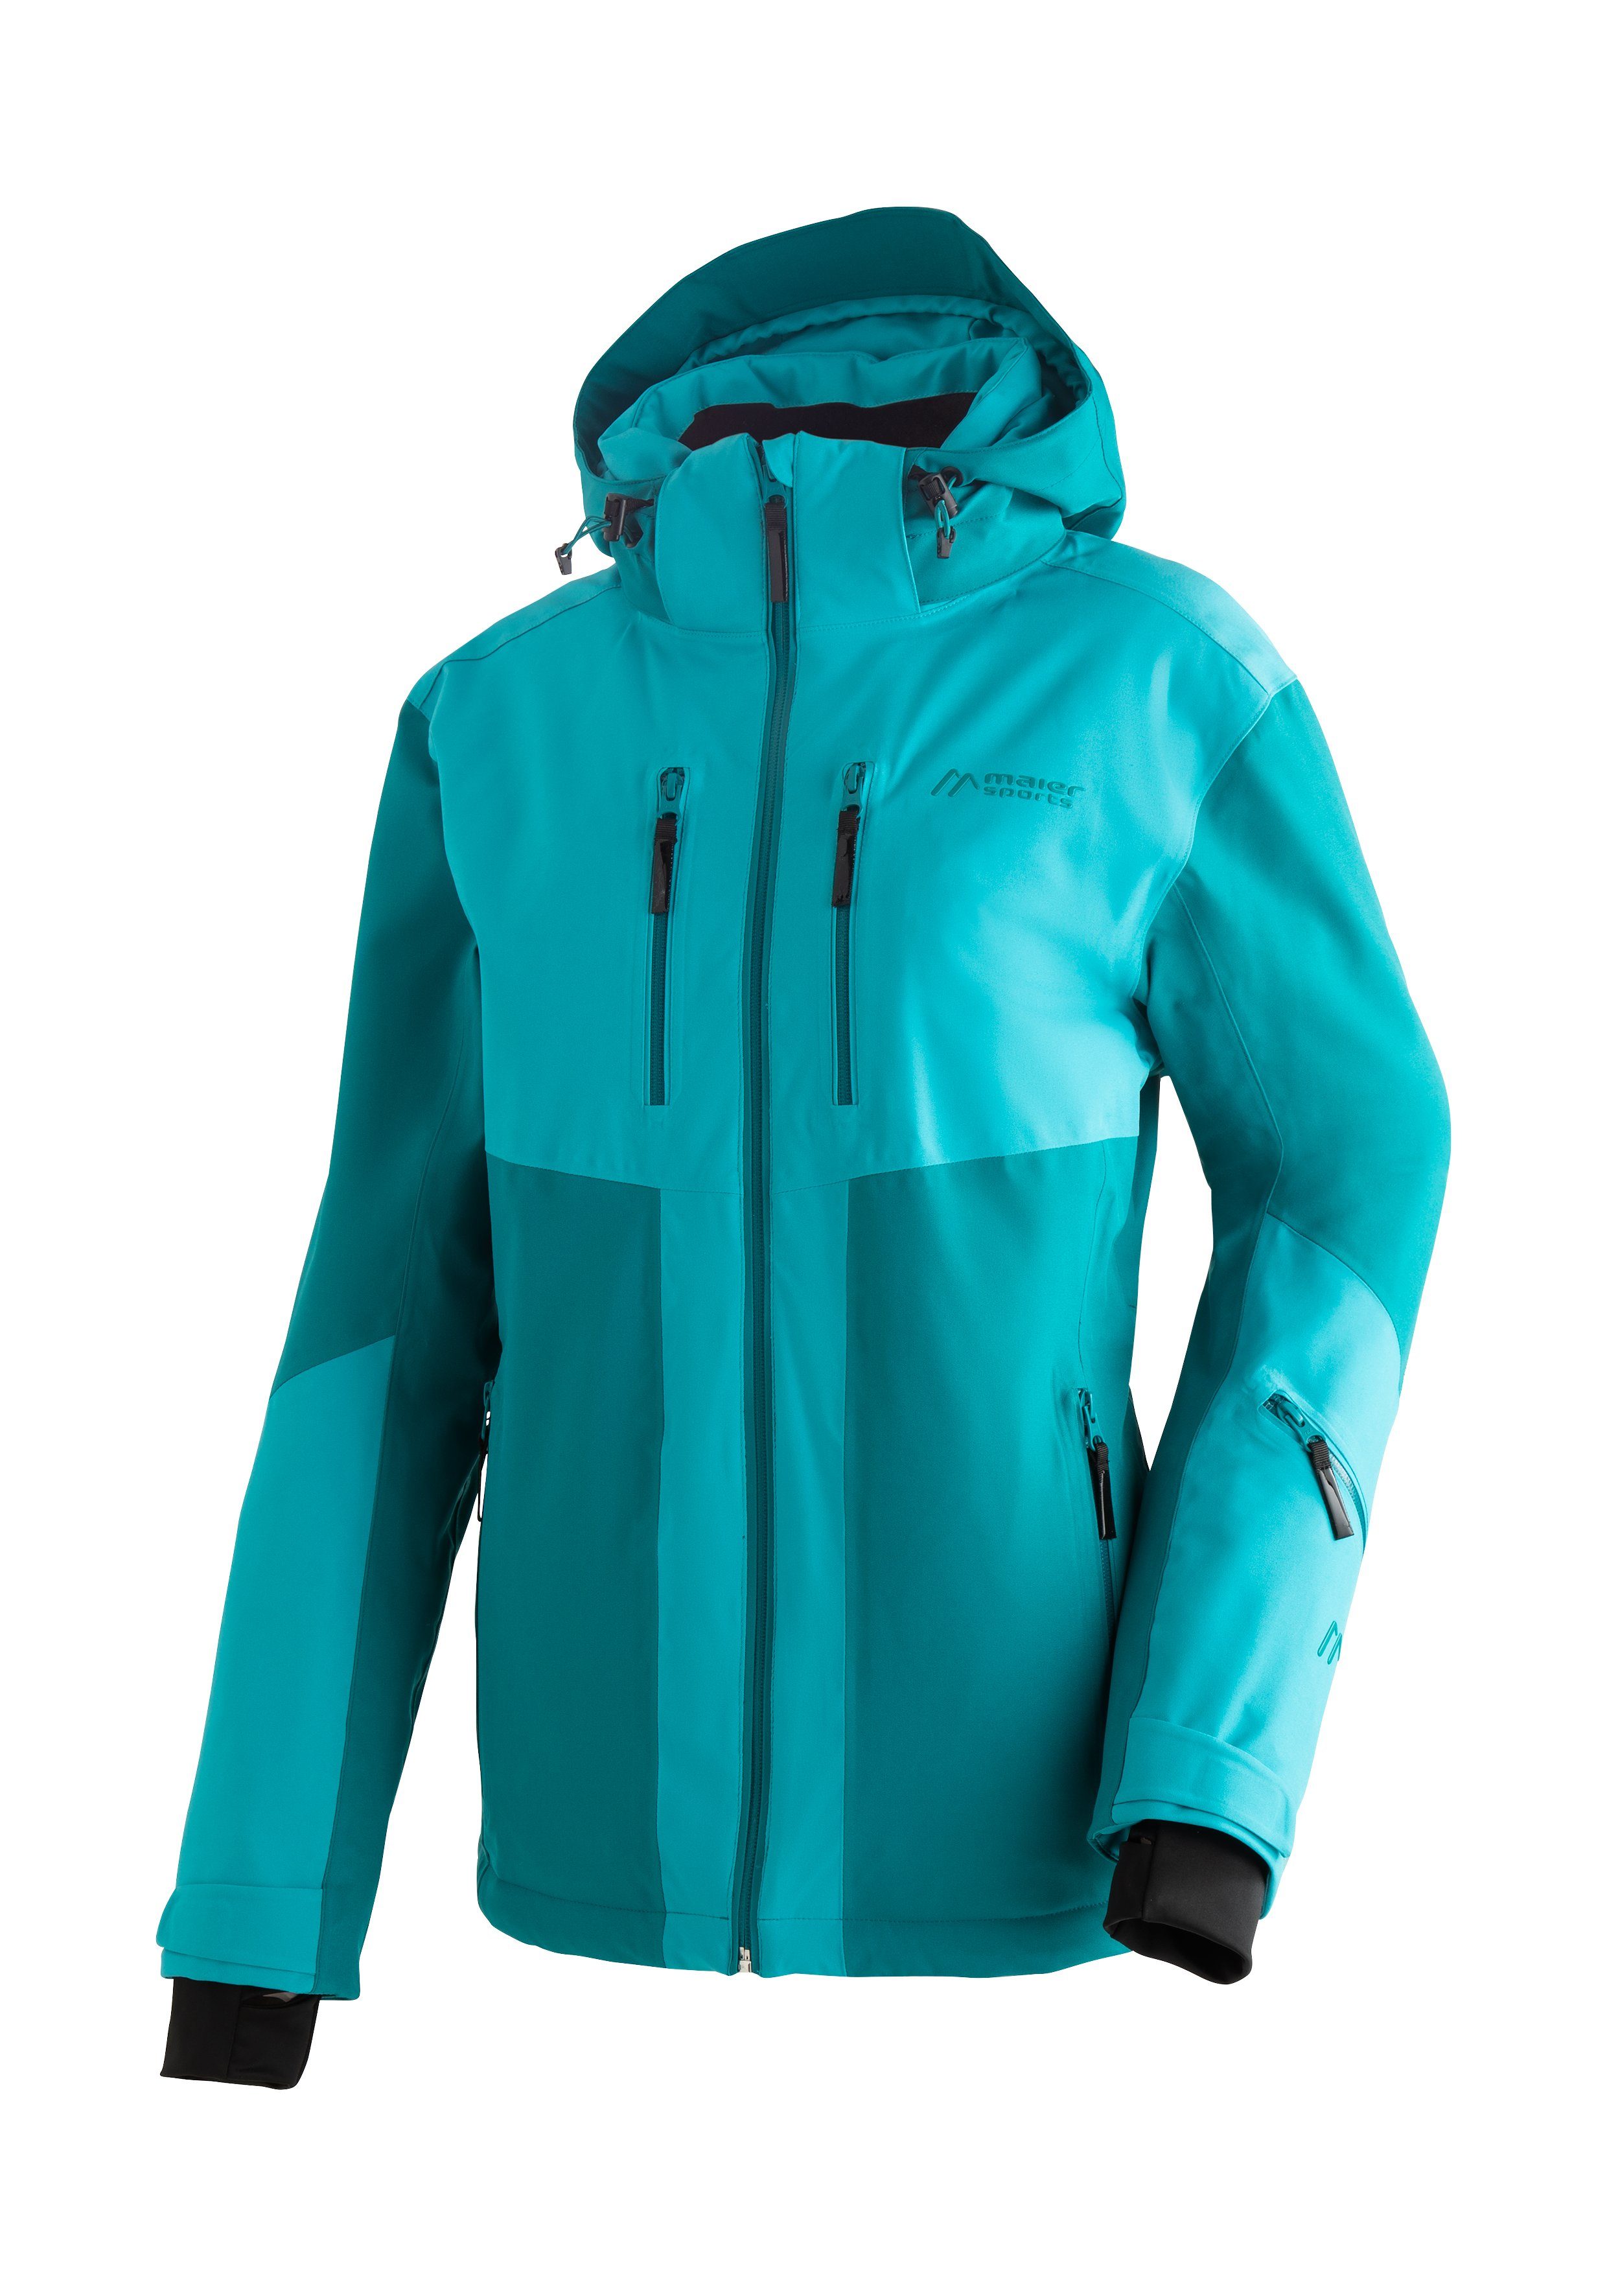 Maier Sports Skijacke Pinilla atmungsaktive Winterjacke Ski-Jacke, winddichte Damen wasserdichte schilfgrün und